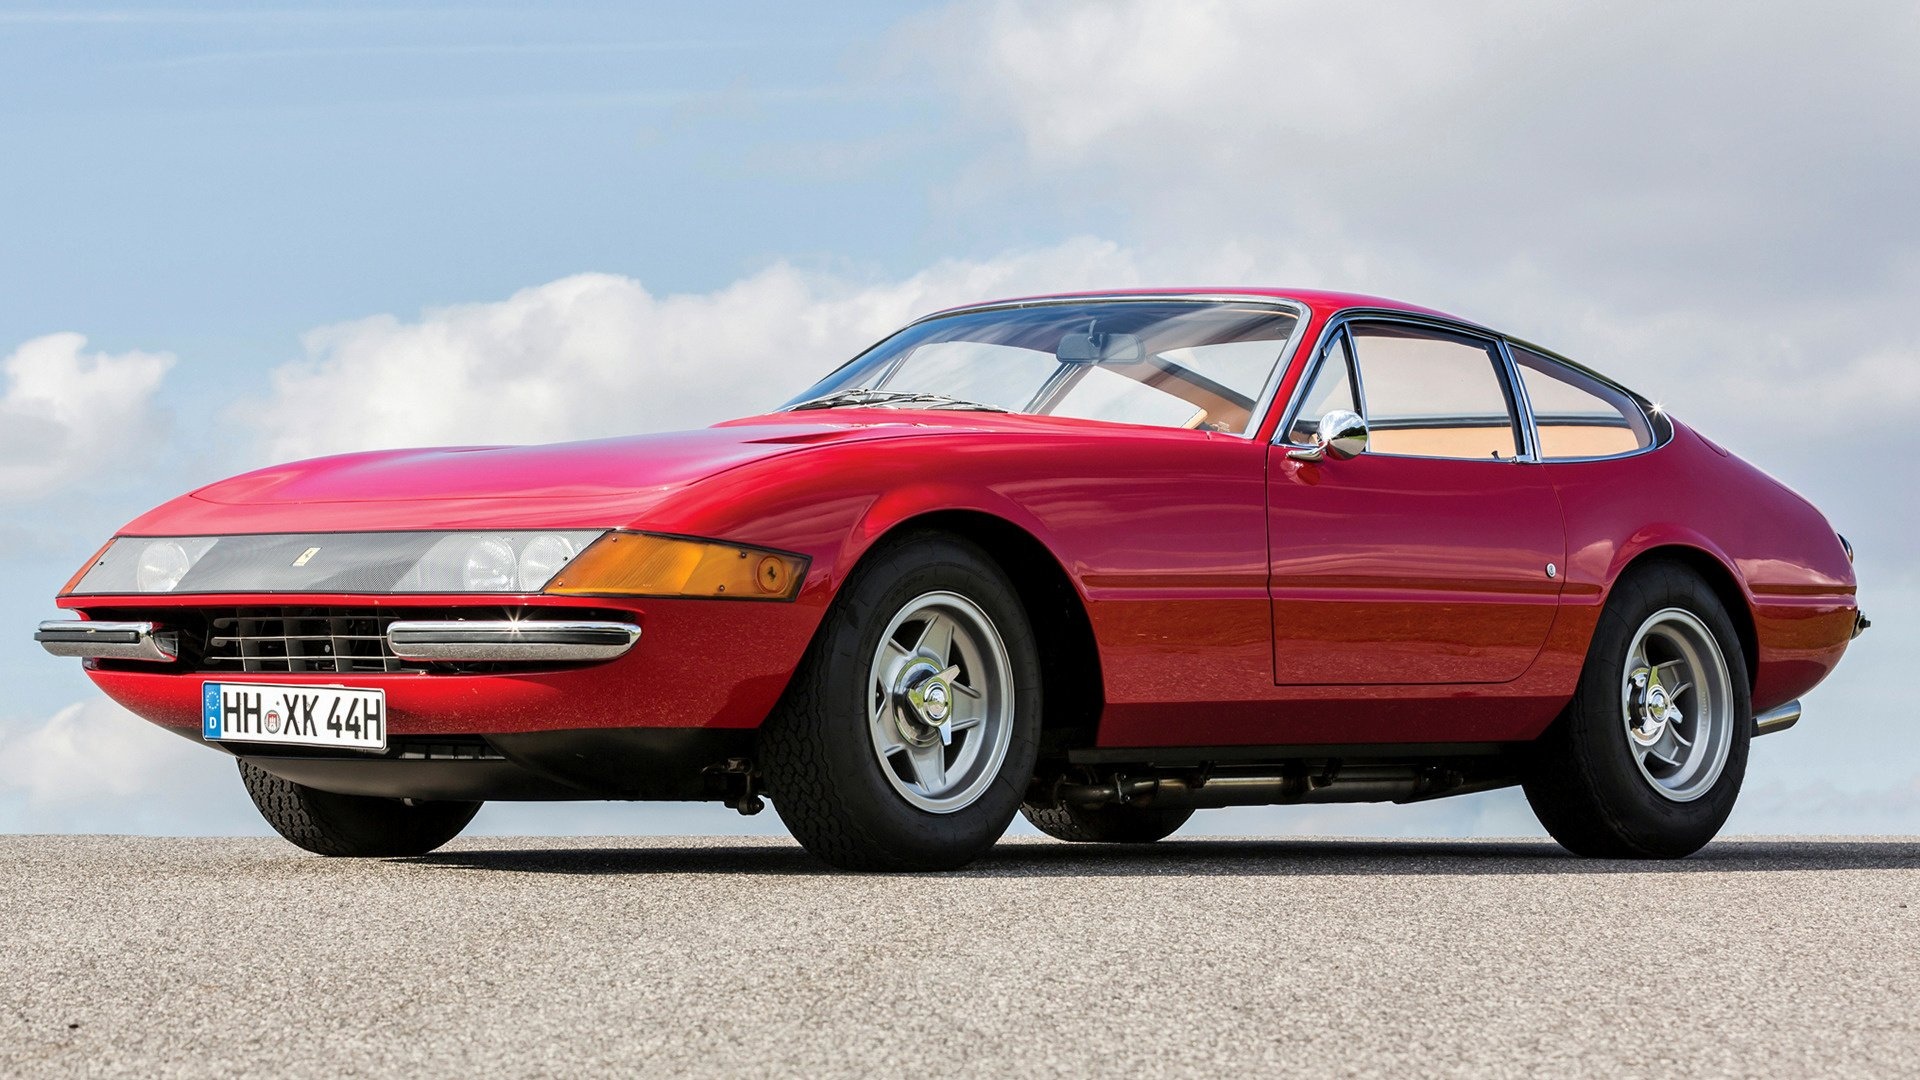 Ferrari Daytona, Classic 1968 model, Timeless beauty, Passion for speed, 1920x1080 Full HD Desktop